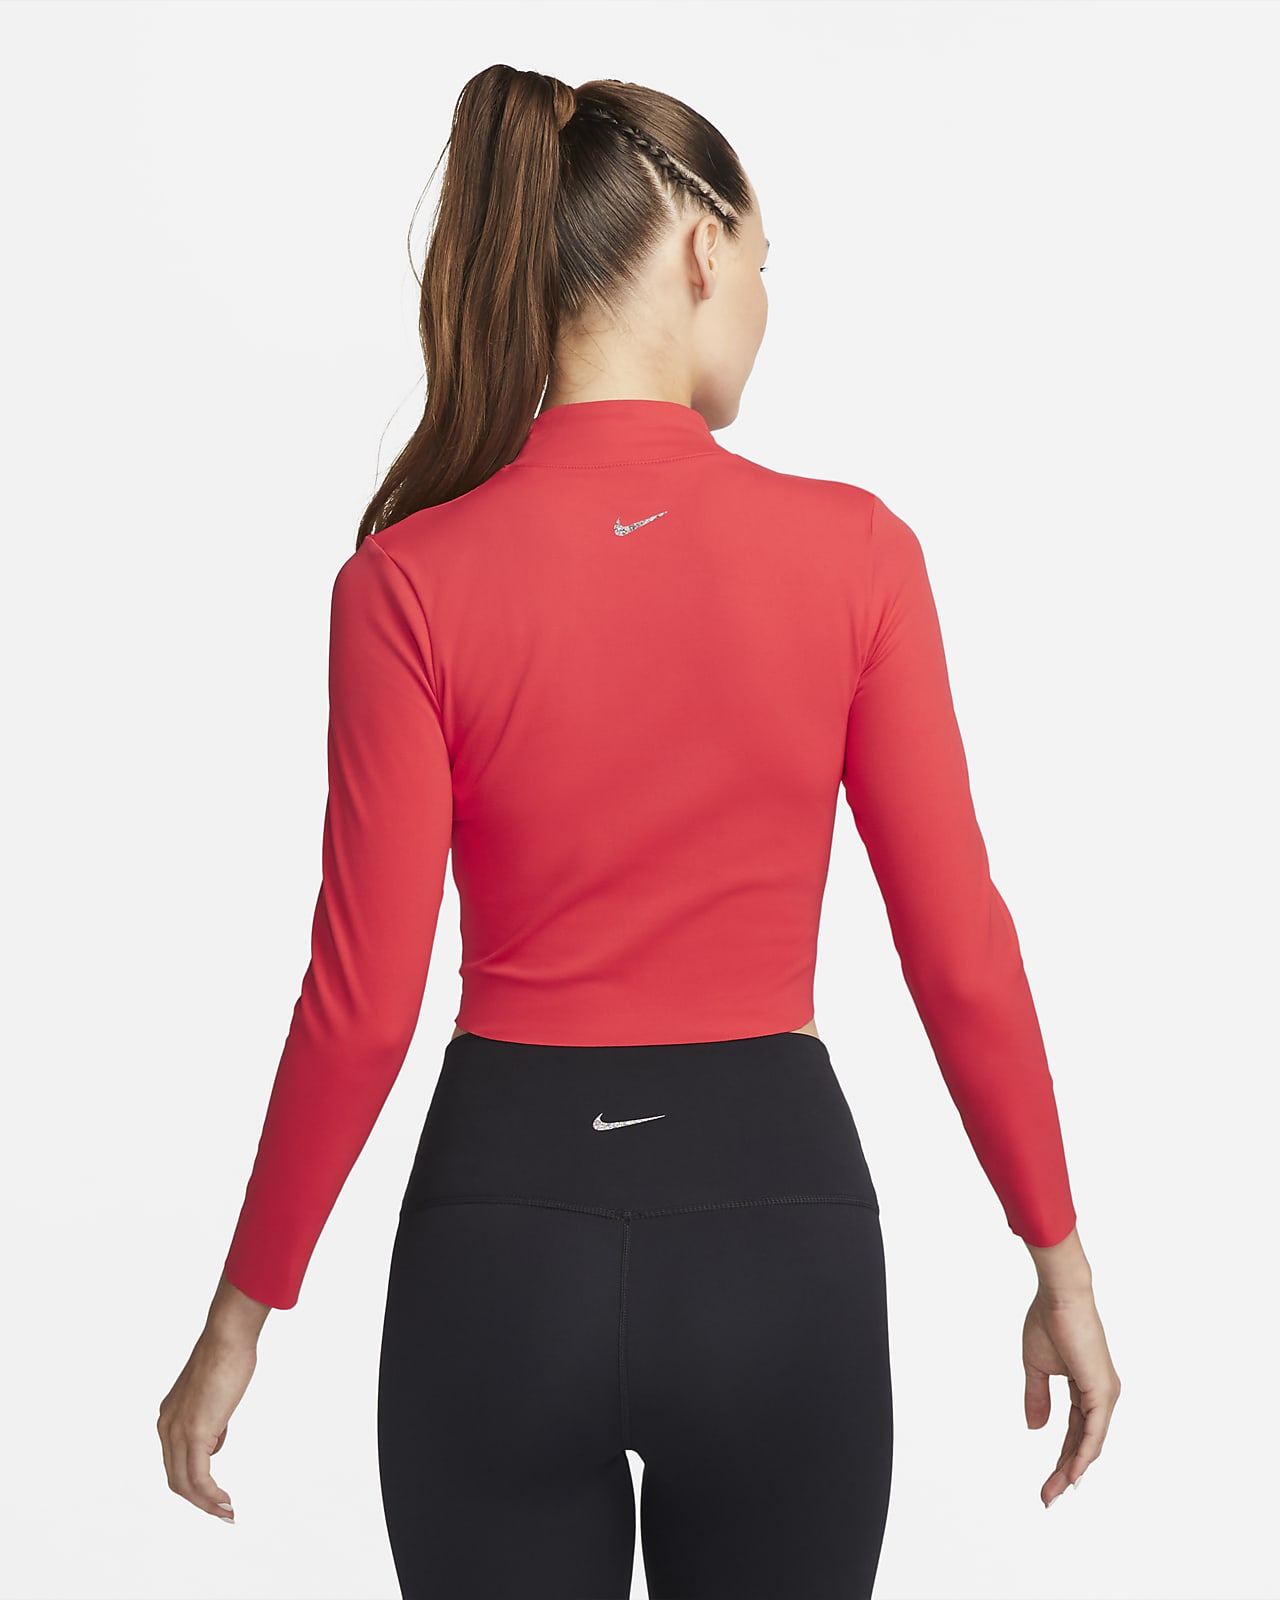 Baron Saga Mew Mew Nike Yoga Dri-FIT Luxe Women's Long Sleeve Crop Top. Nike.com